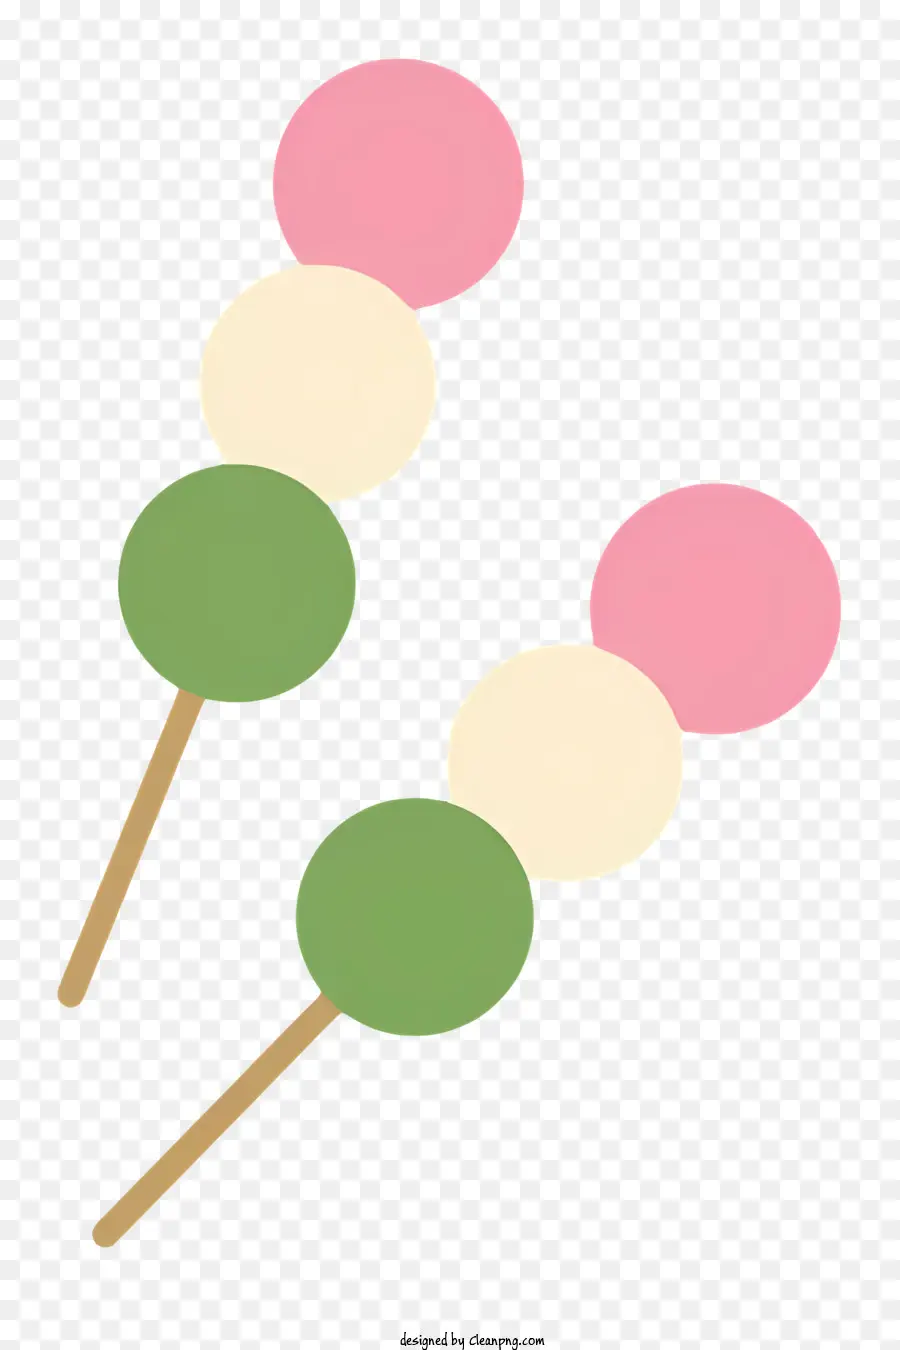 Cartoon Lollipop Candy Green und Pink Frosted Lollipop - Grün und rosa Lutscher mit weißem Zuckerguss